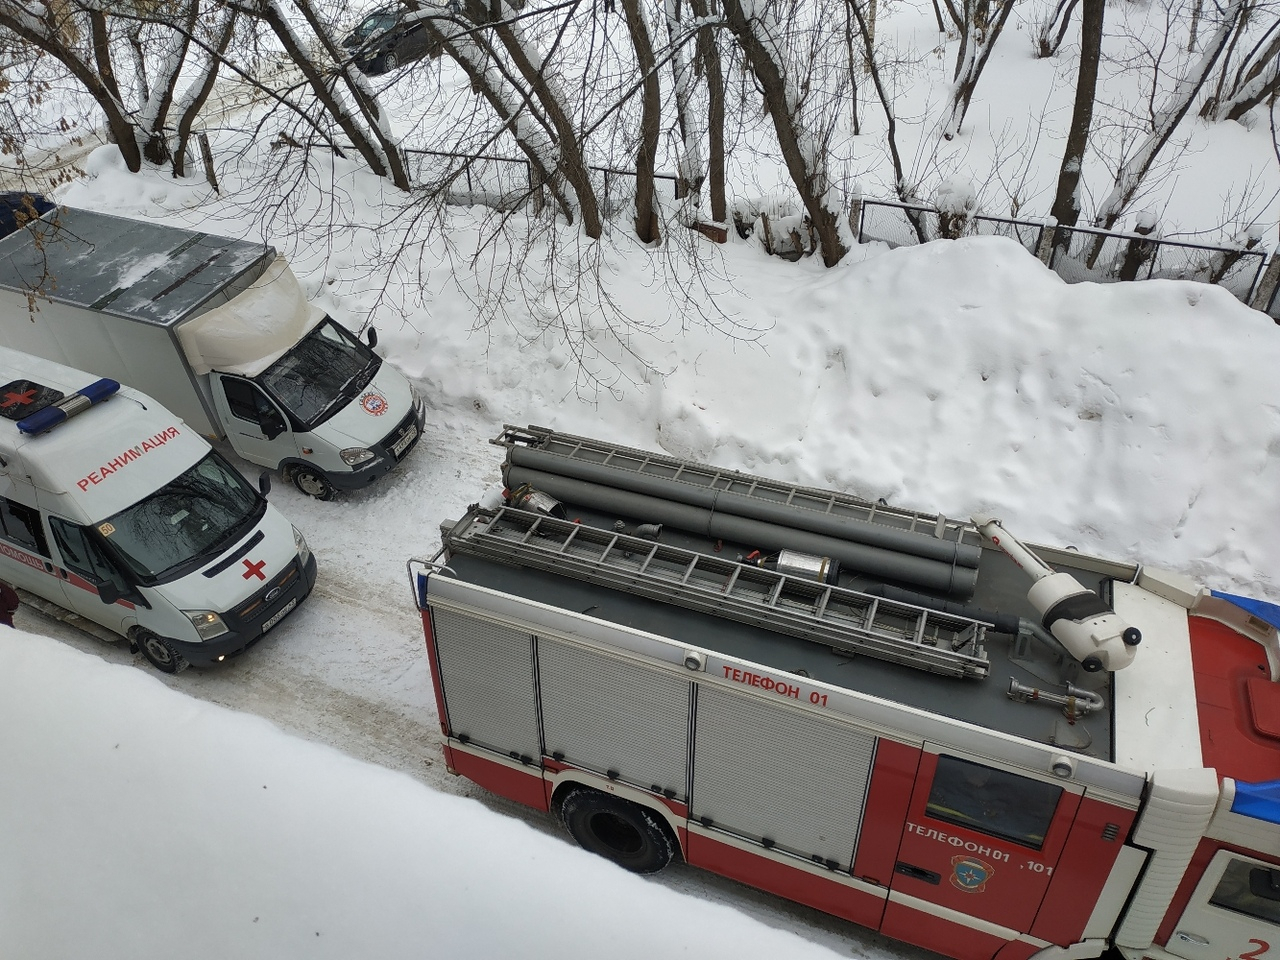 Прямая трансляция: в разных частях Кирова начались эвакуации из-за анонимных звонков